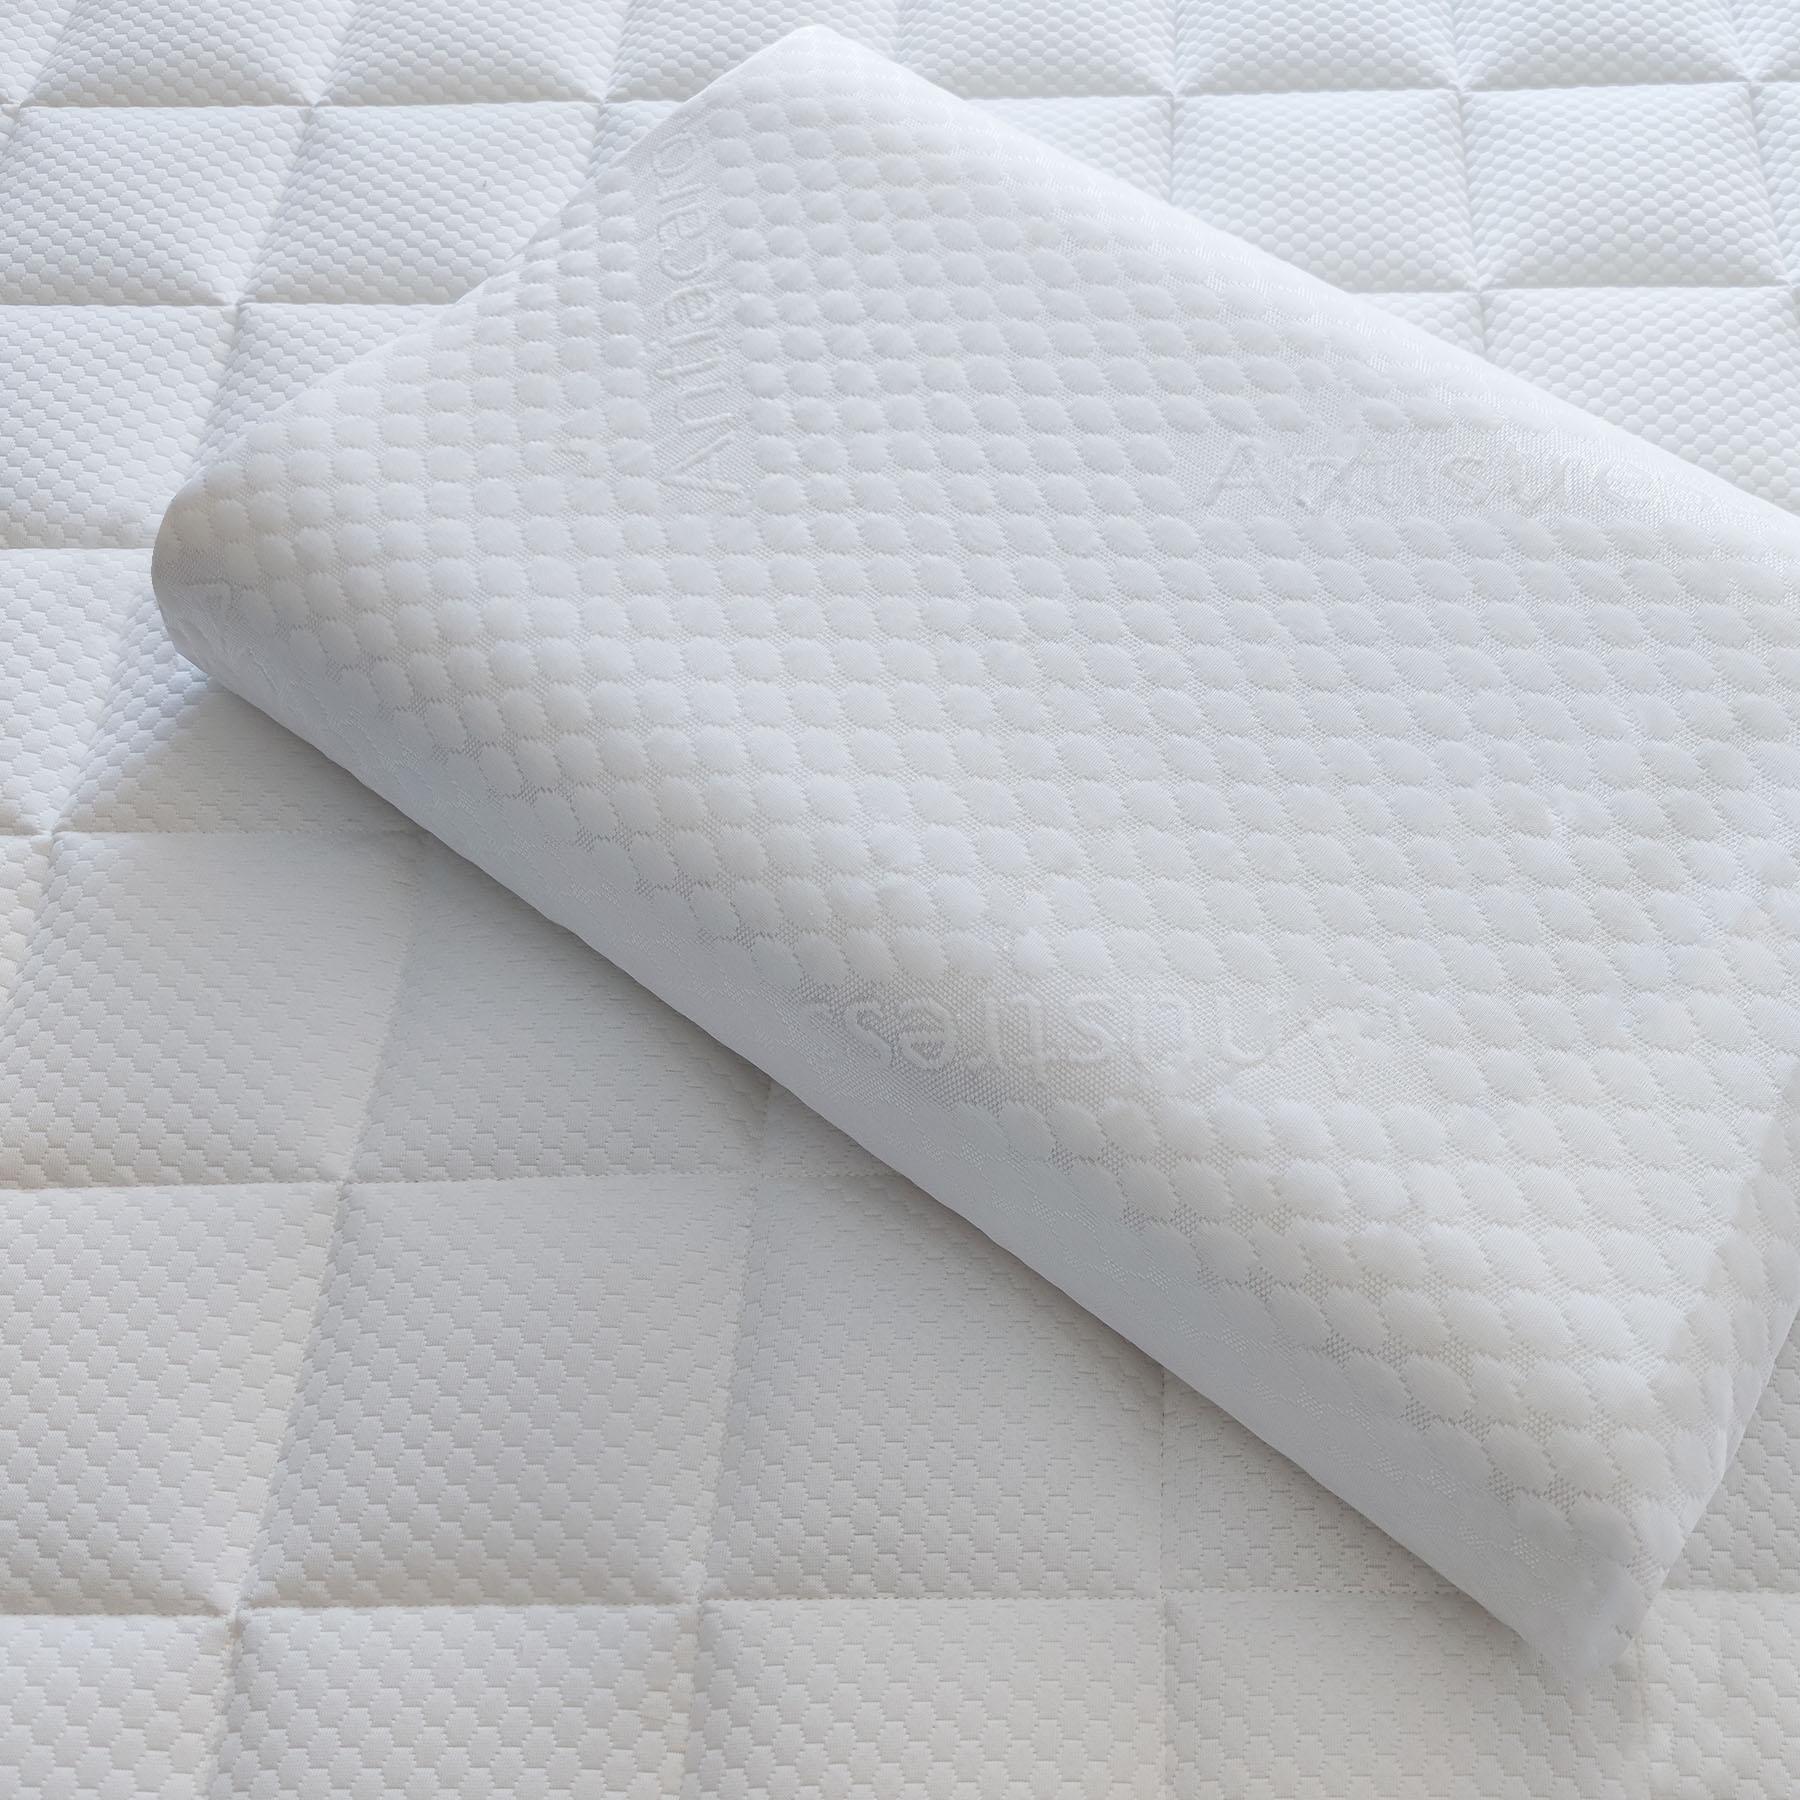 Primo piano del cuscino cervicale Lignano in memory foam e water gel di Beliamo, evidenziando i materiali di alta qualità